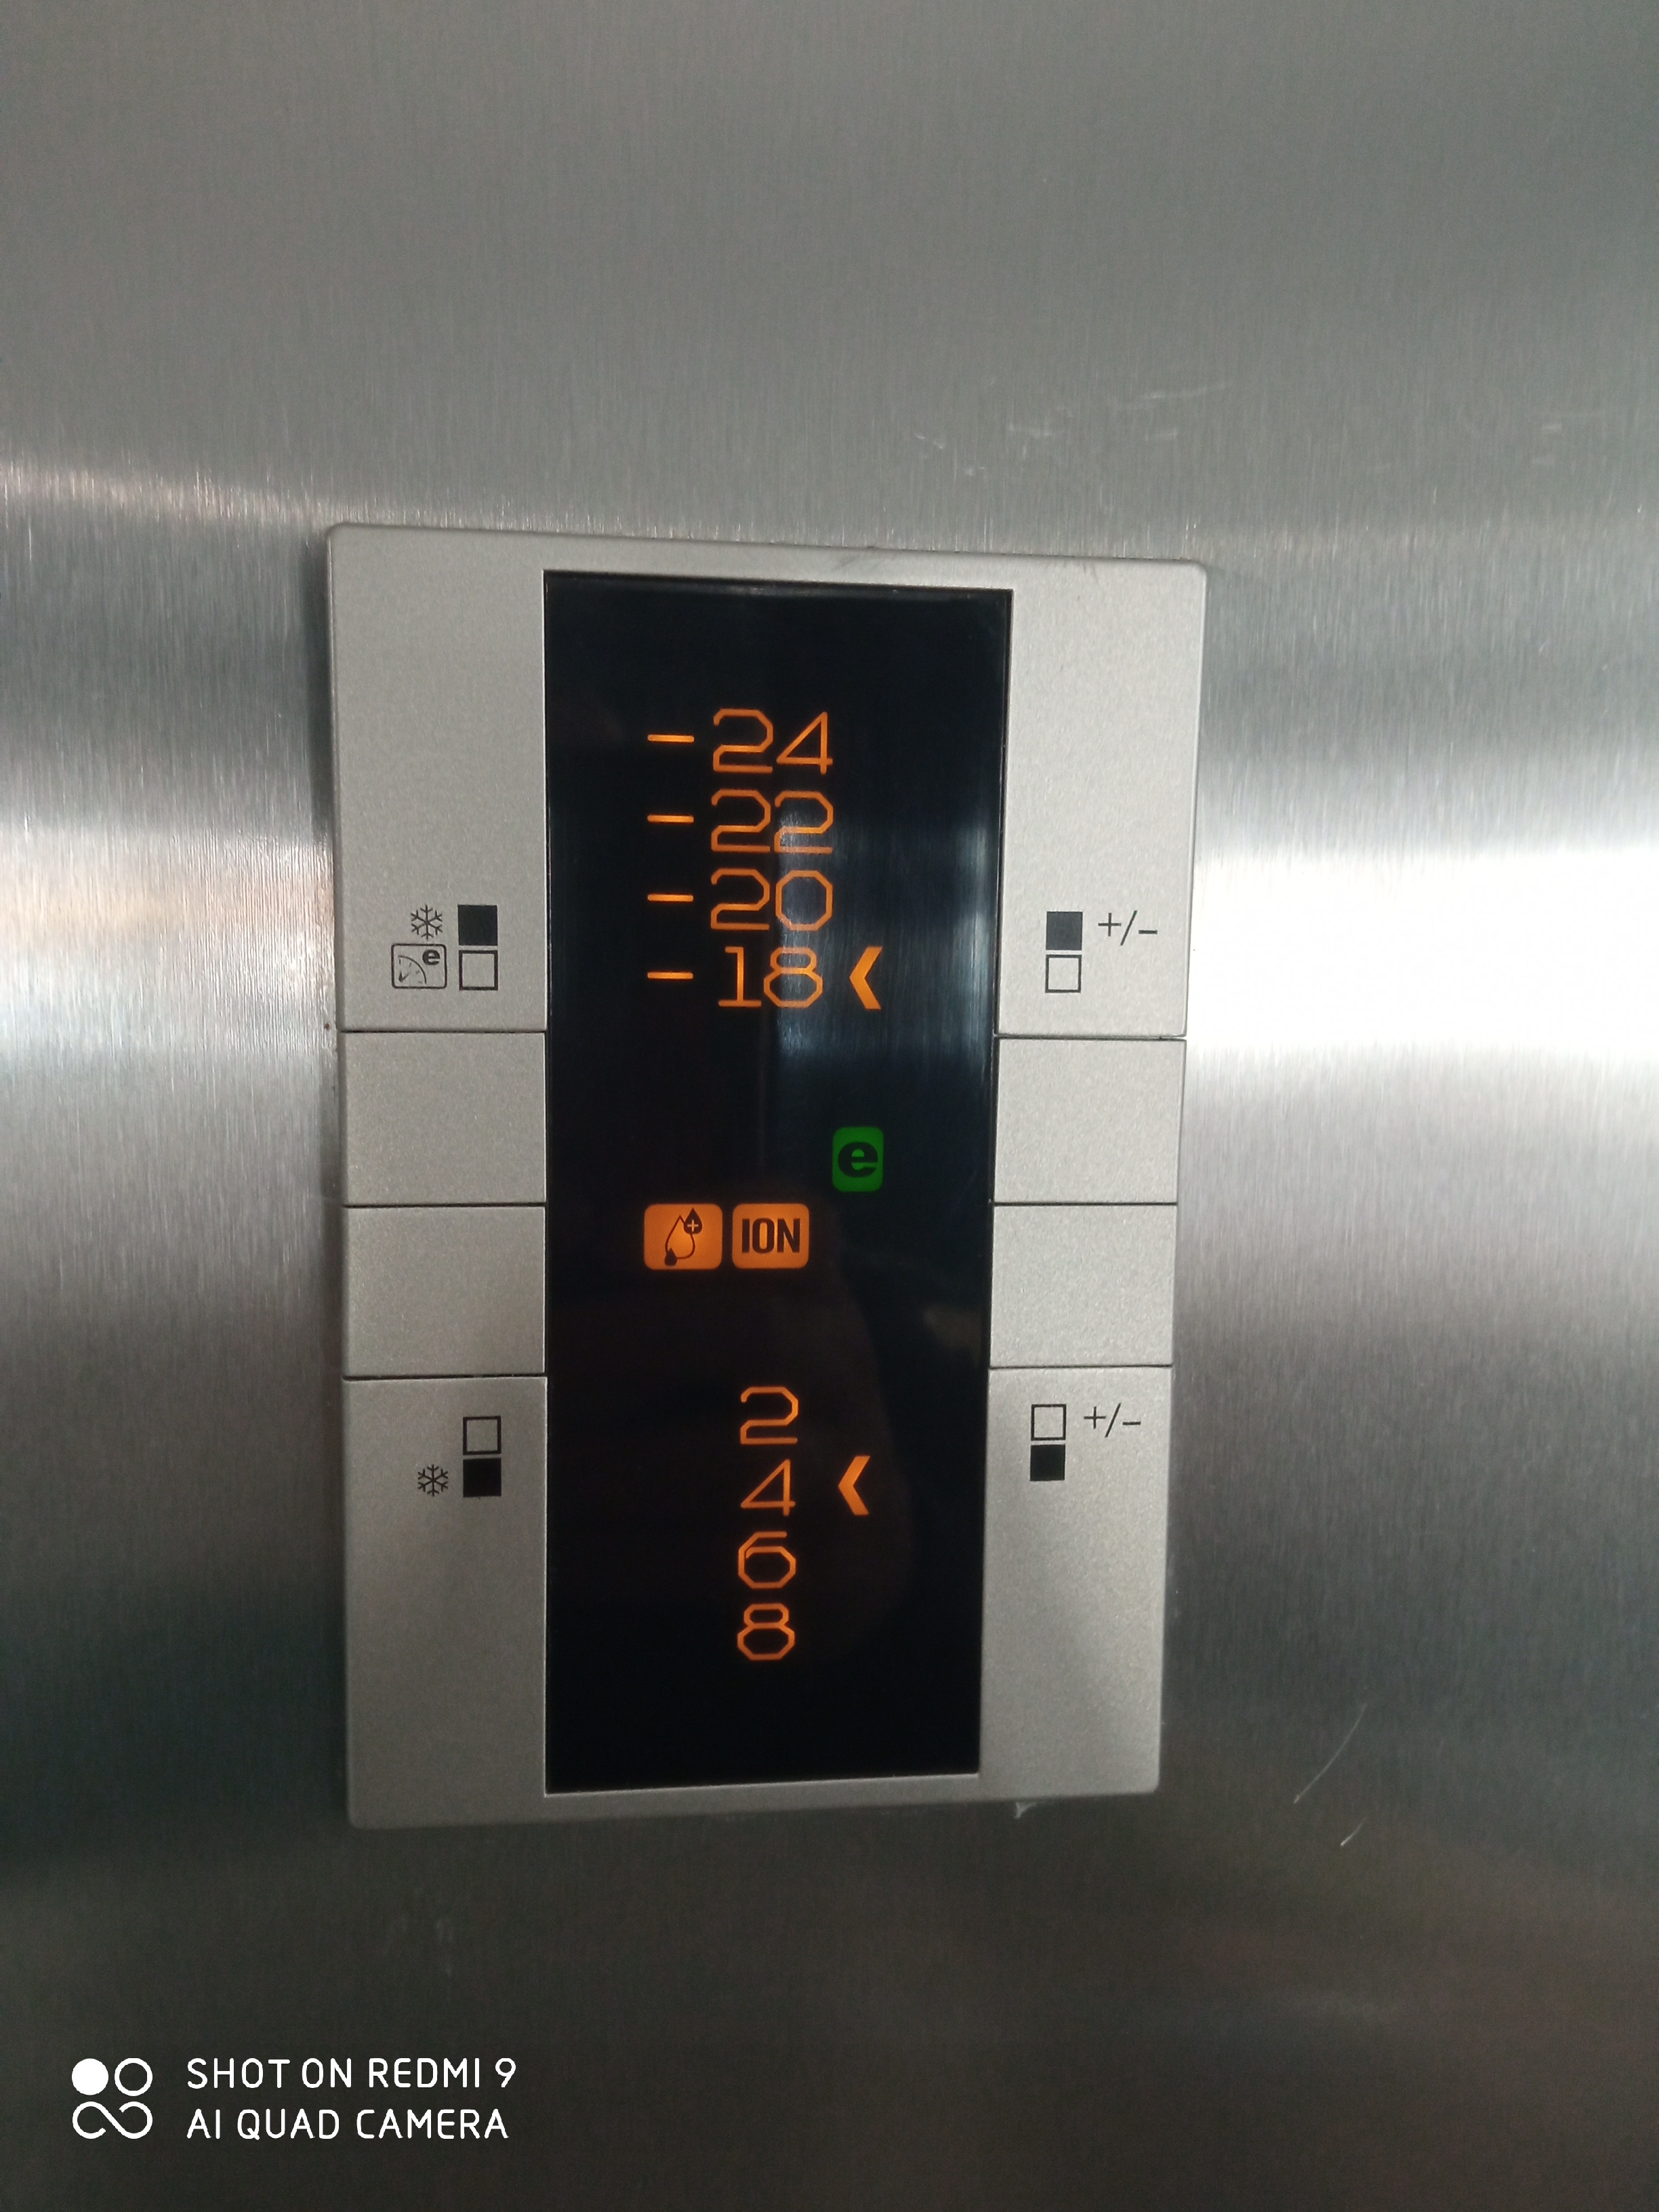 Come faccio a regolare la temperatura del frigo ?